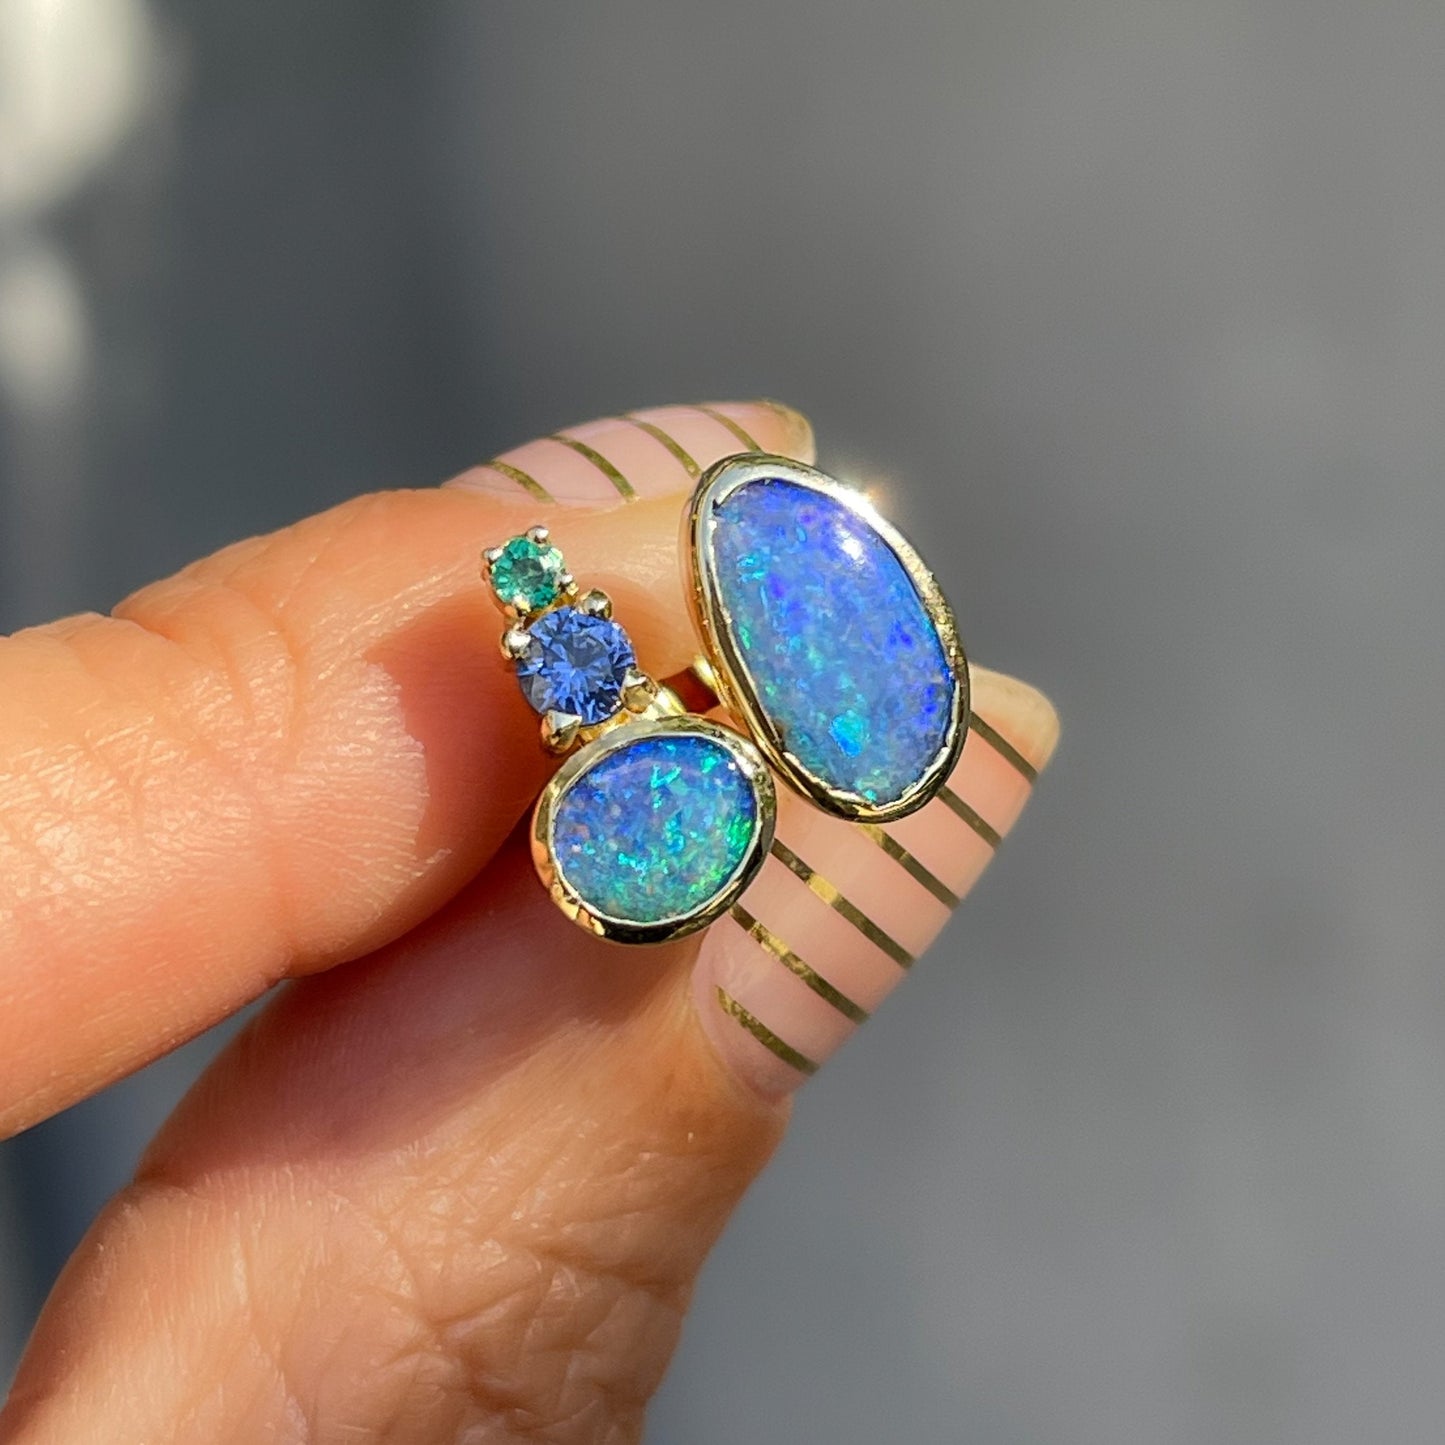 Blue opal earrings by NIXIN Jewelry